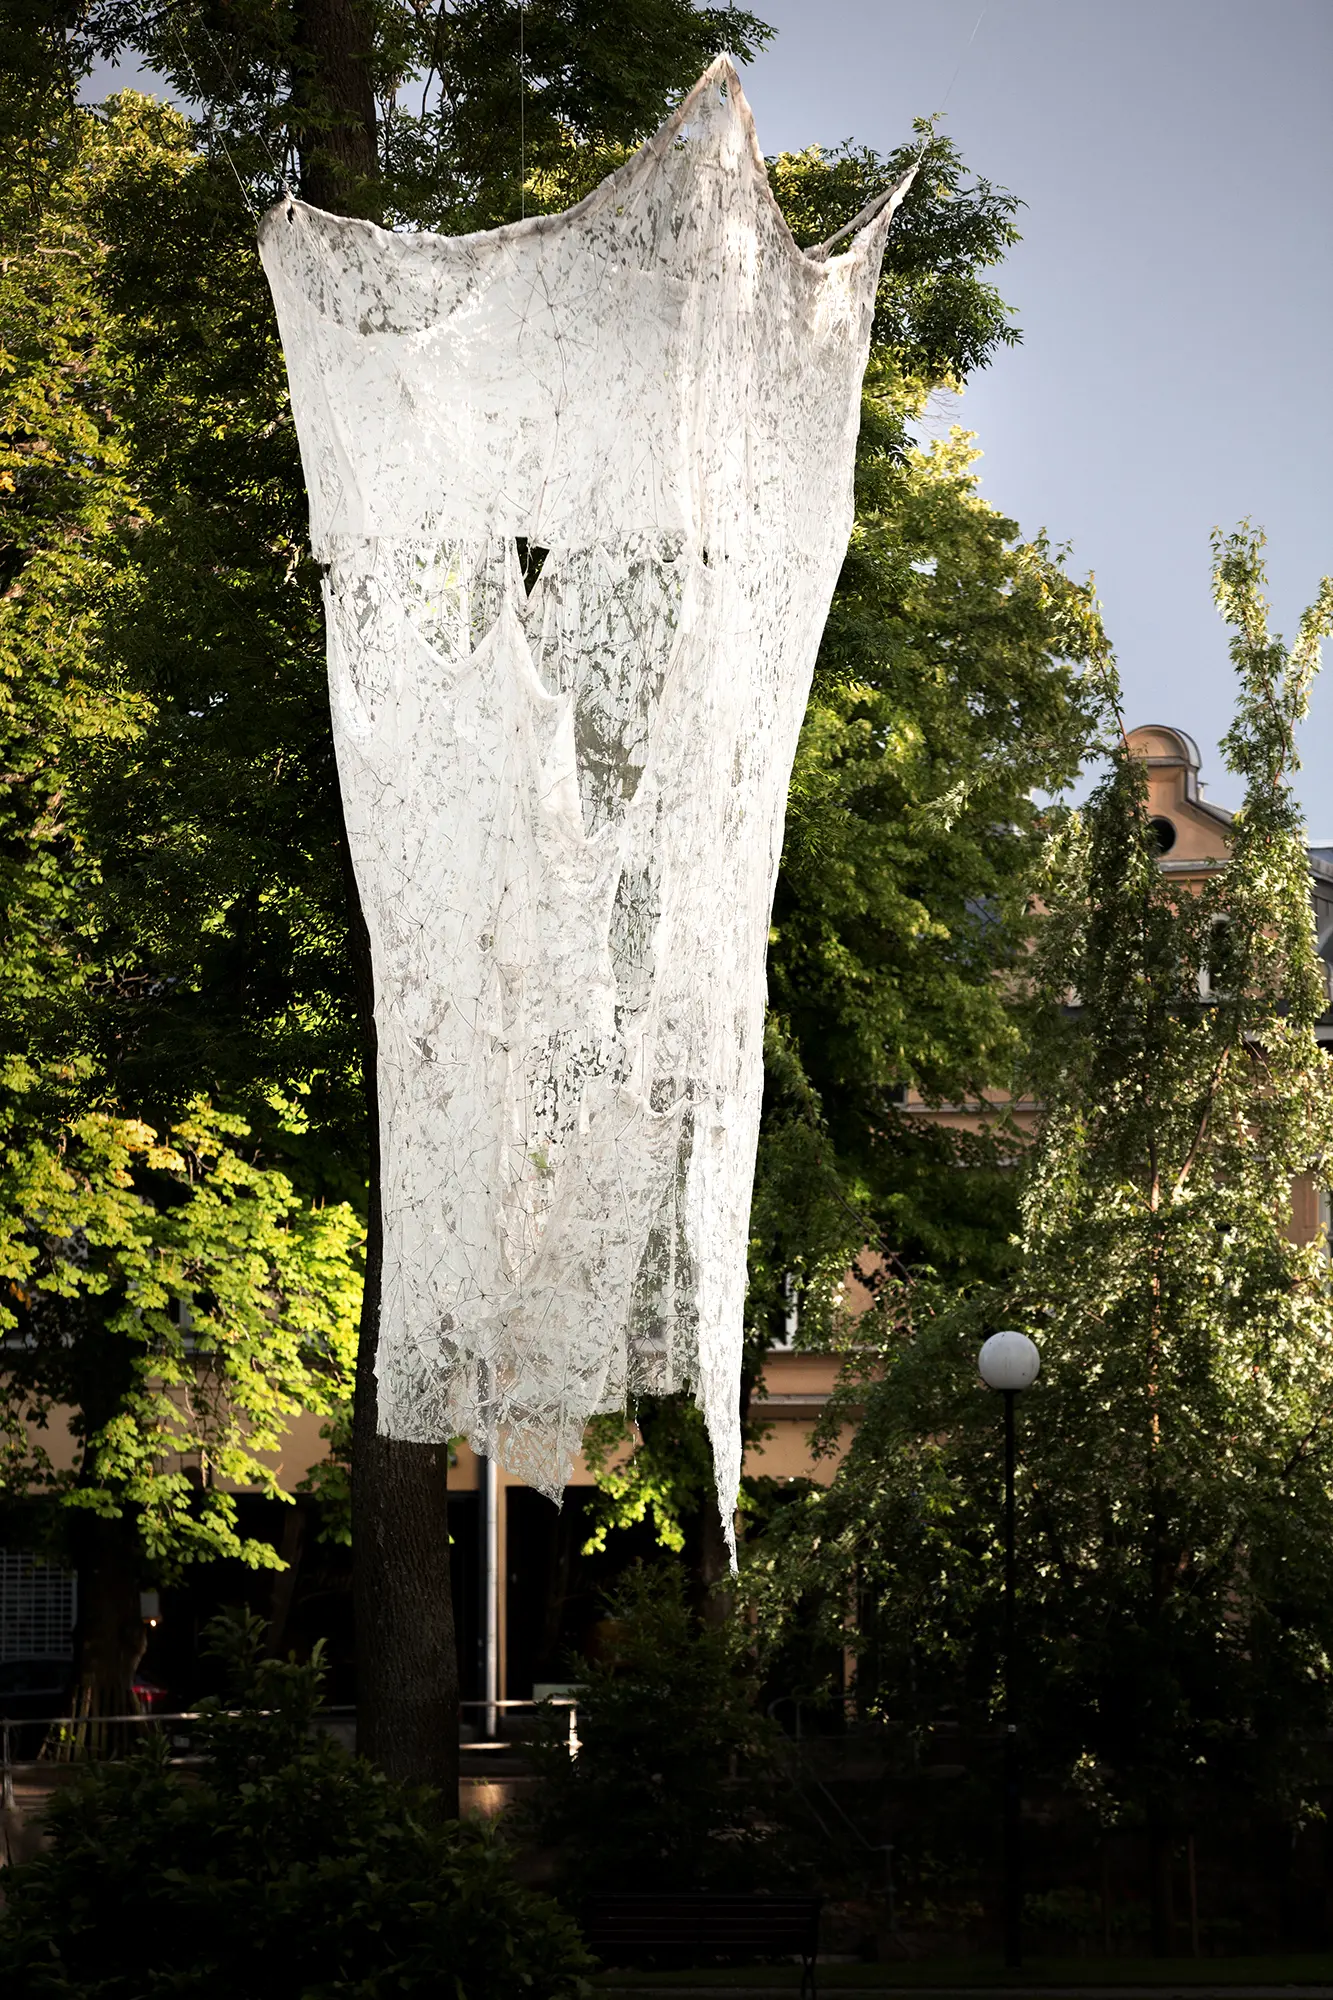 Från ett träd hänger en installation bestående av ett vitt föremål som ser ut som ett stort lakan eller draperi med ojämn yta. Ytan ser sliten ut och är full av små genomskinliga hål